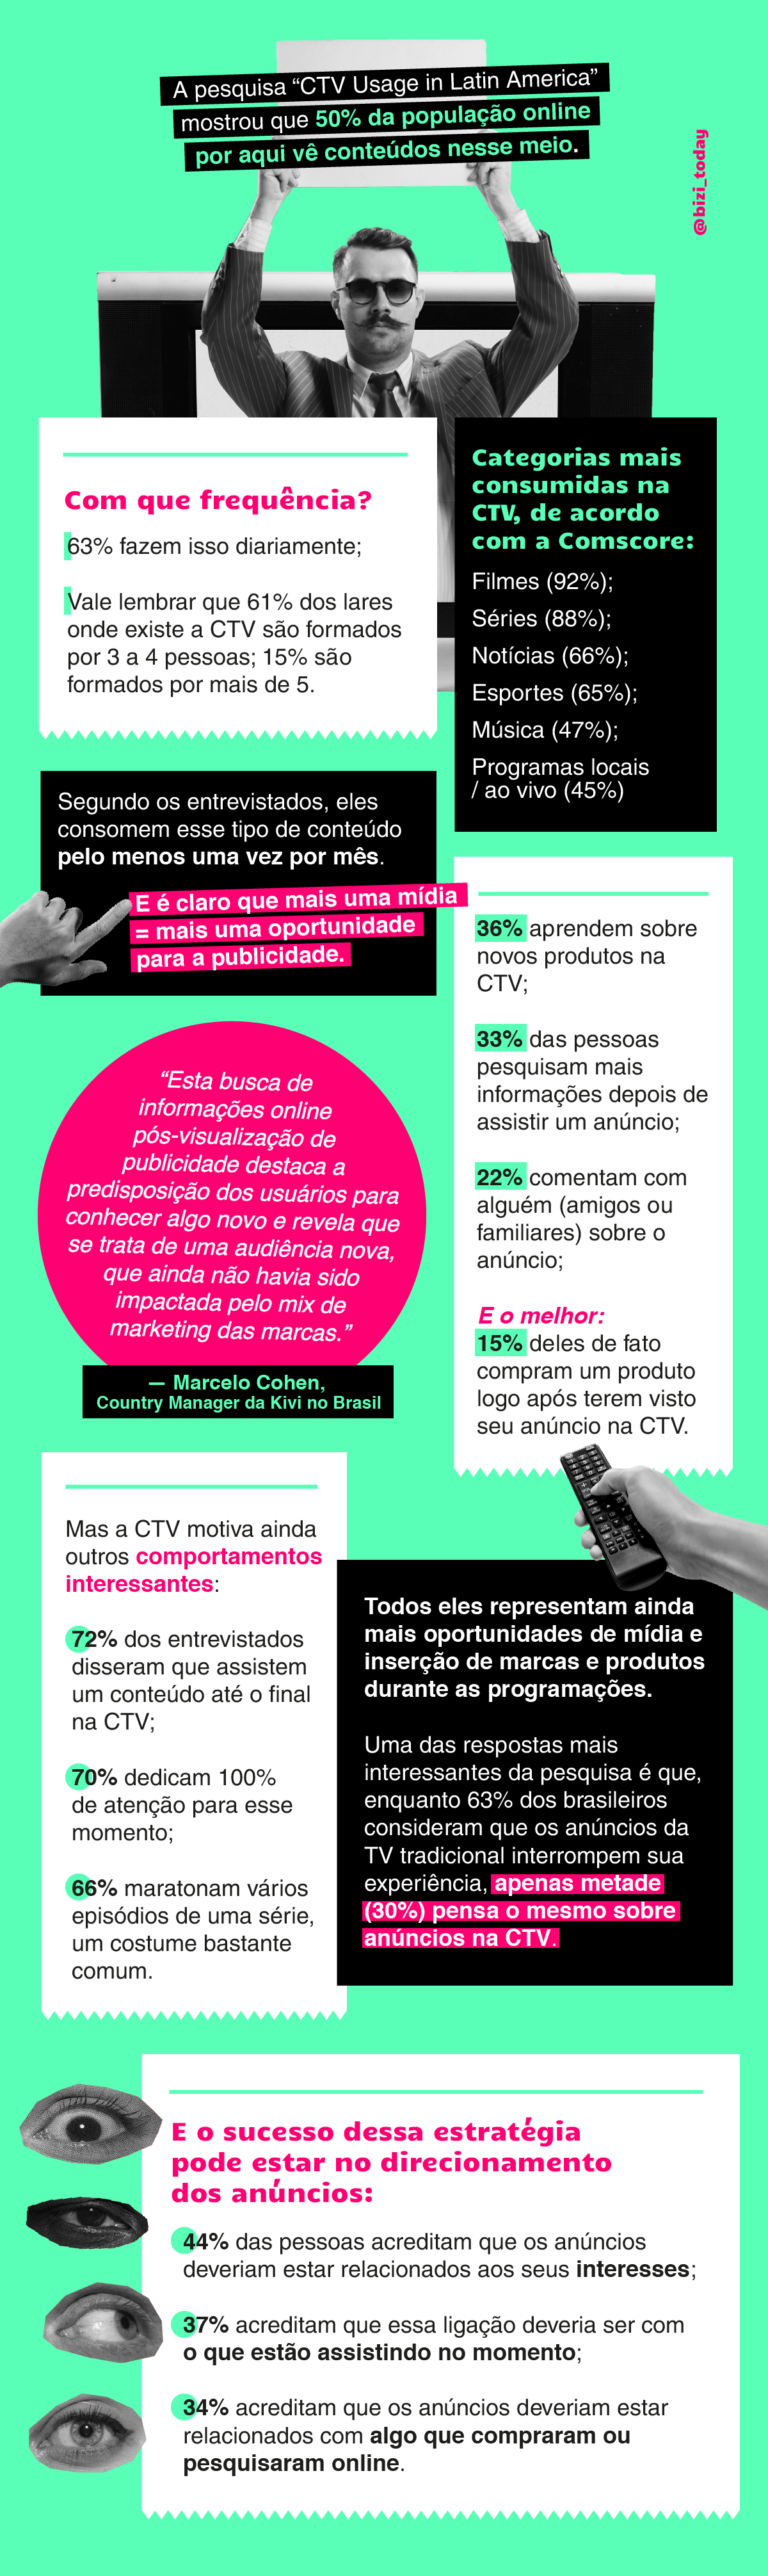 infográfico sobre a CTV e dados interessantes sobre a mídia que tem ganhado o coração dos brasileiros.